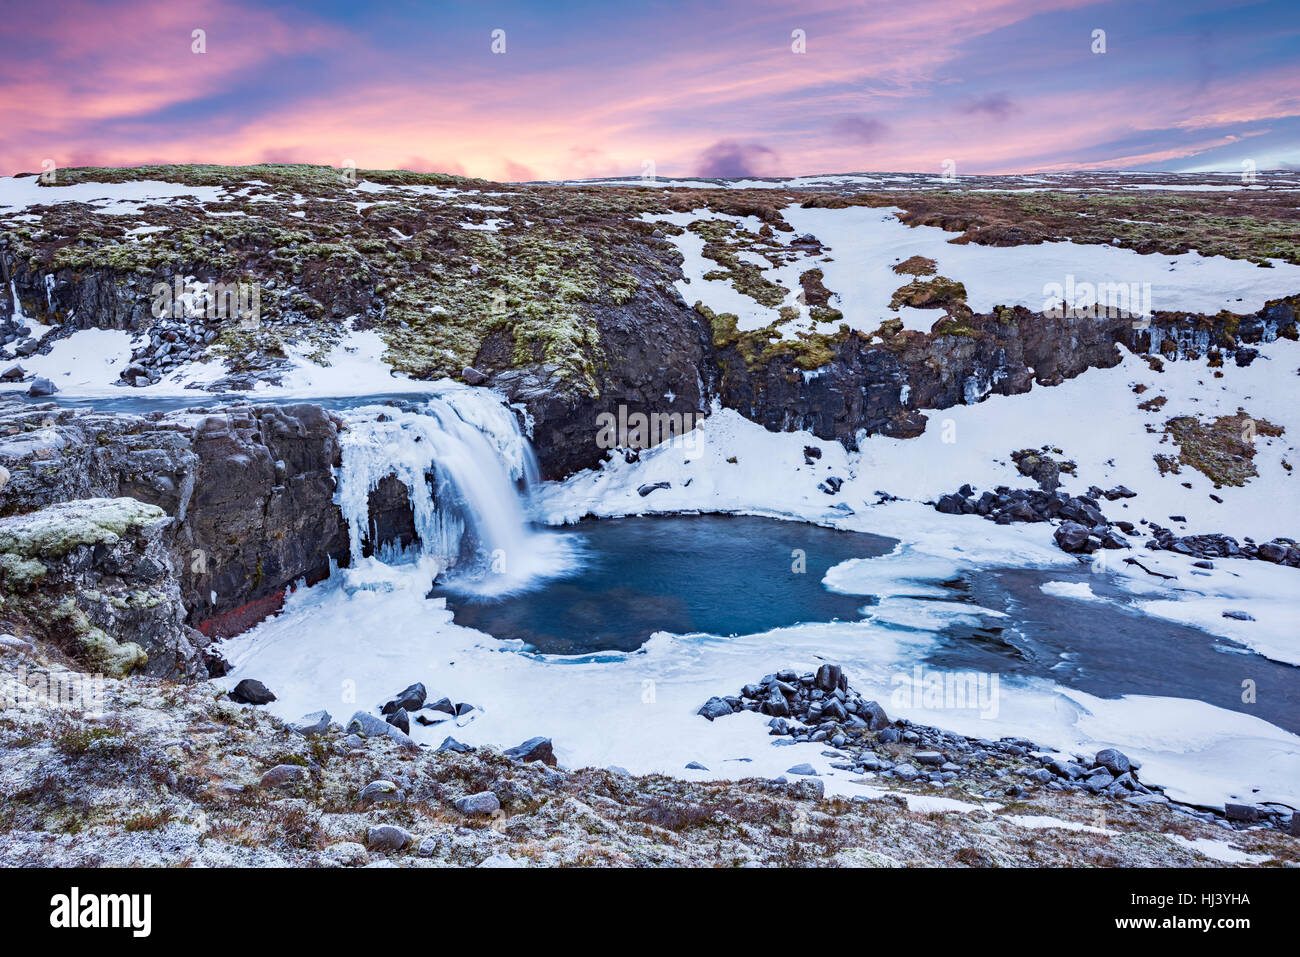 Une cascade de neige froide dans les hautes terres d'Islande encadrée par un ciel pastel et le terrain accidenté offre des paysages pittoresques illustrant le désert gelé Banque D'Images